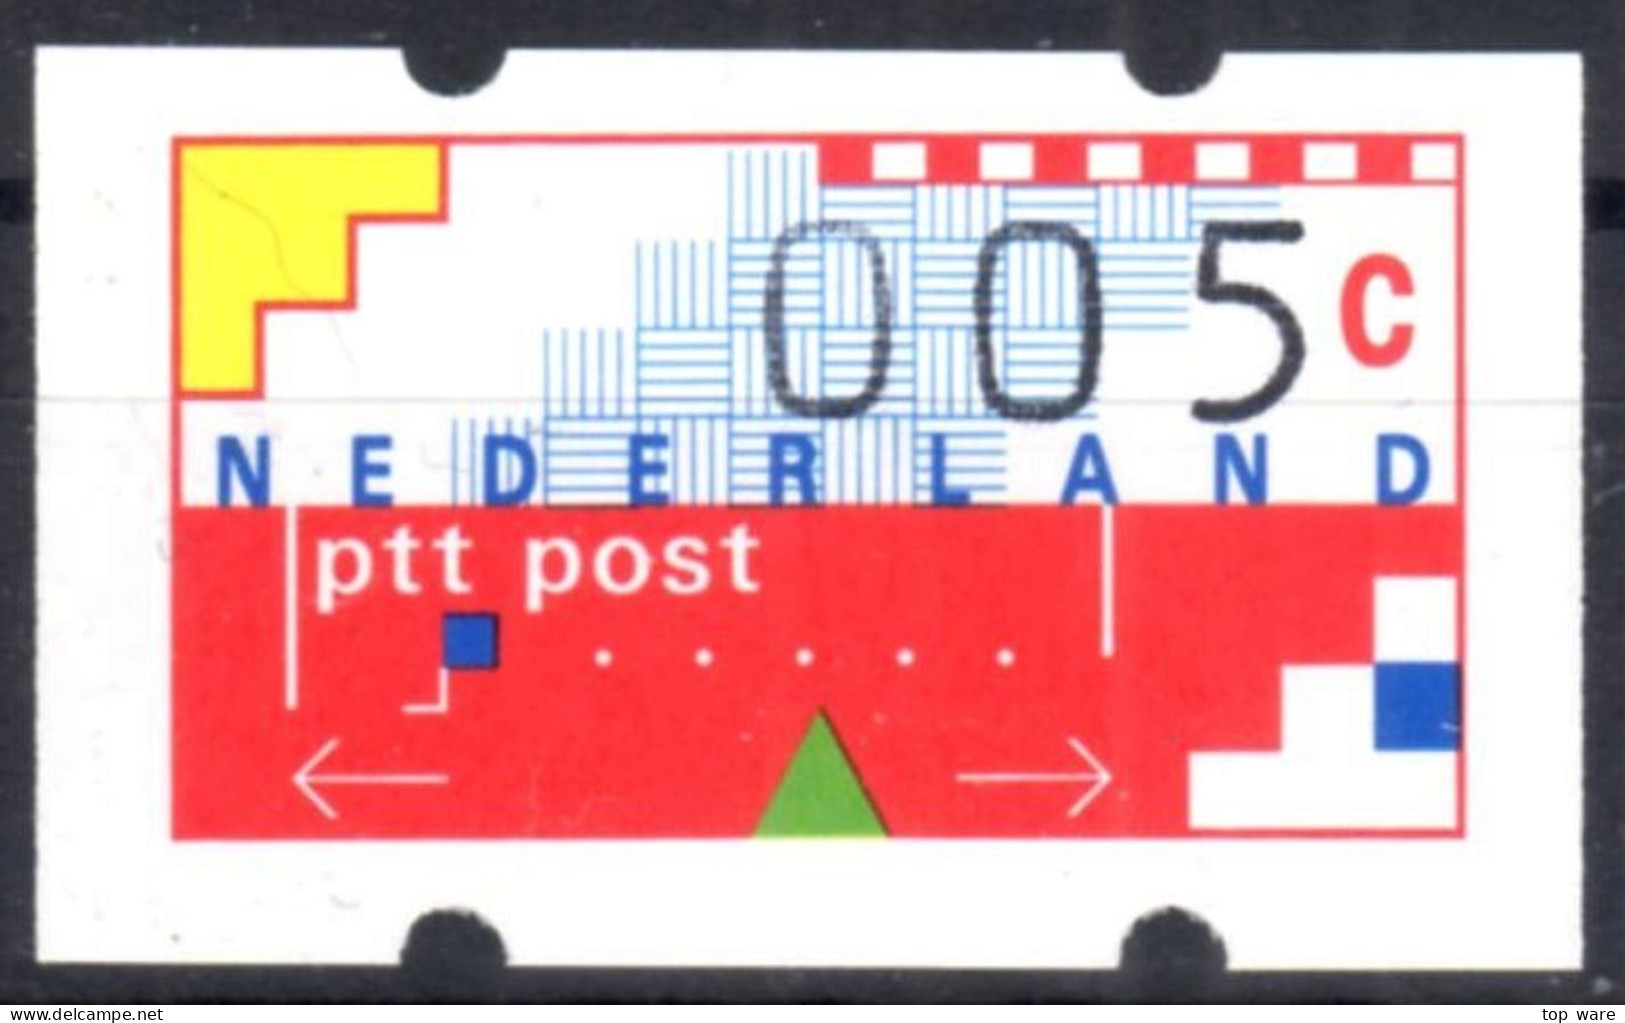 Niederlande Nederland ATM 1 Kleinstwert 5 Cent Postfrisch Mit Quittung Frama Klüssendorf Automatenmarken Etiquetas - Vignette [ATM]